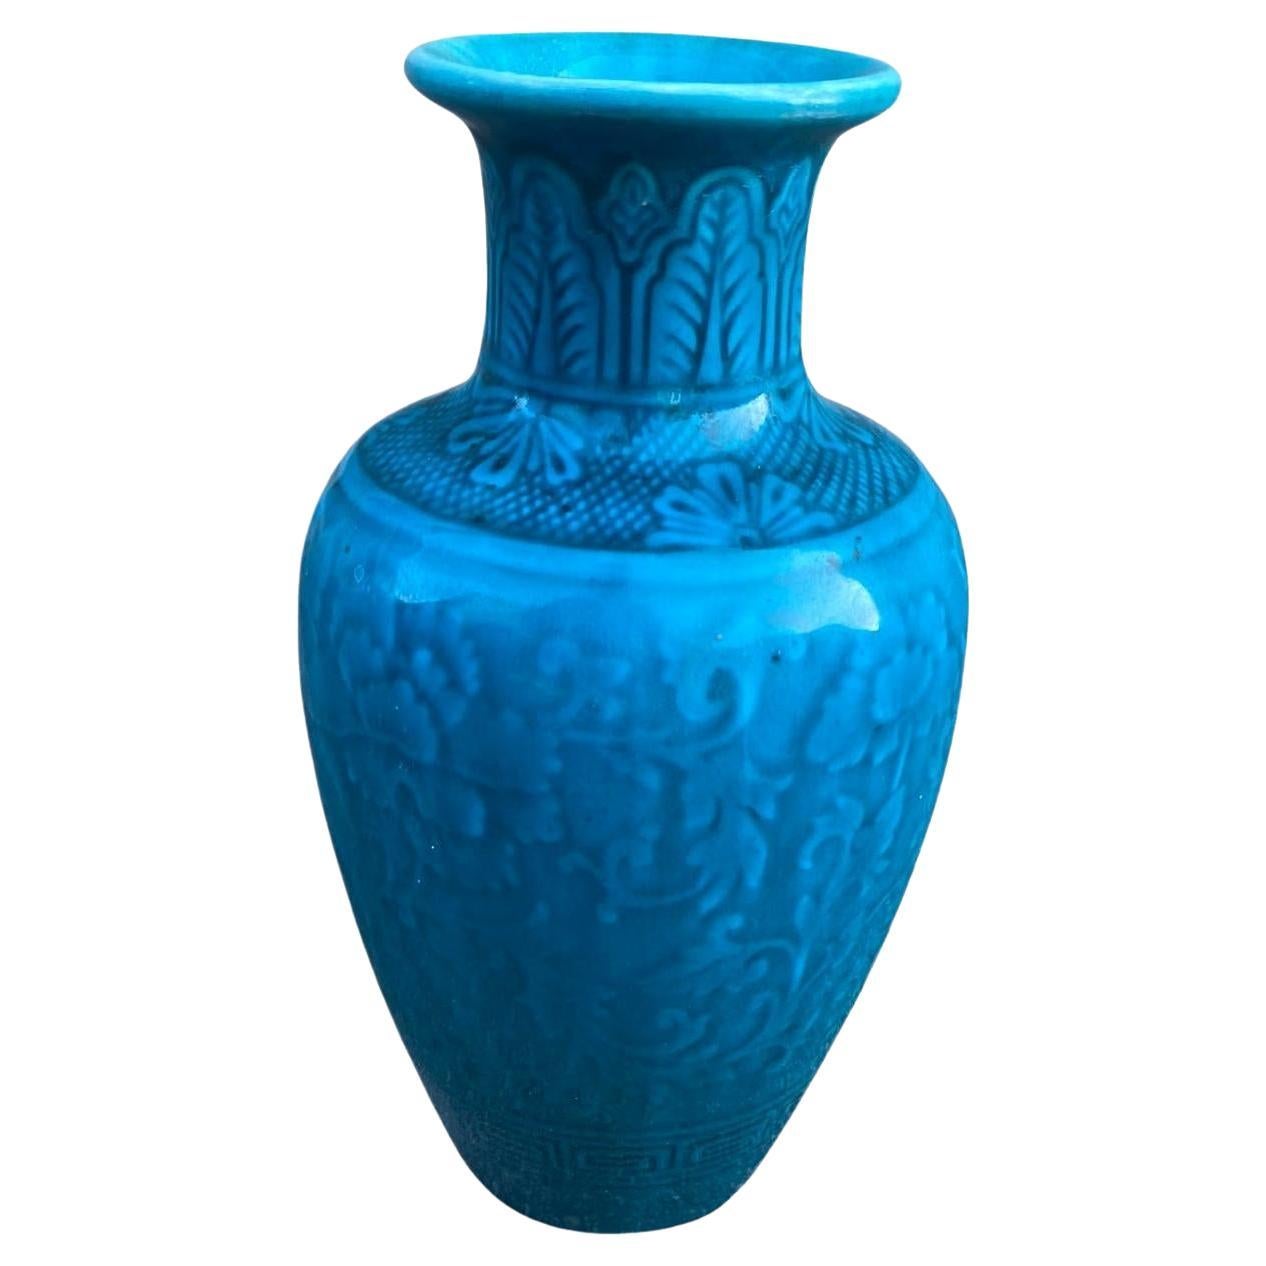 Théodore Deck, Ceramic Vase, Signed, circa 1870 For Sale